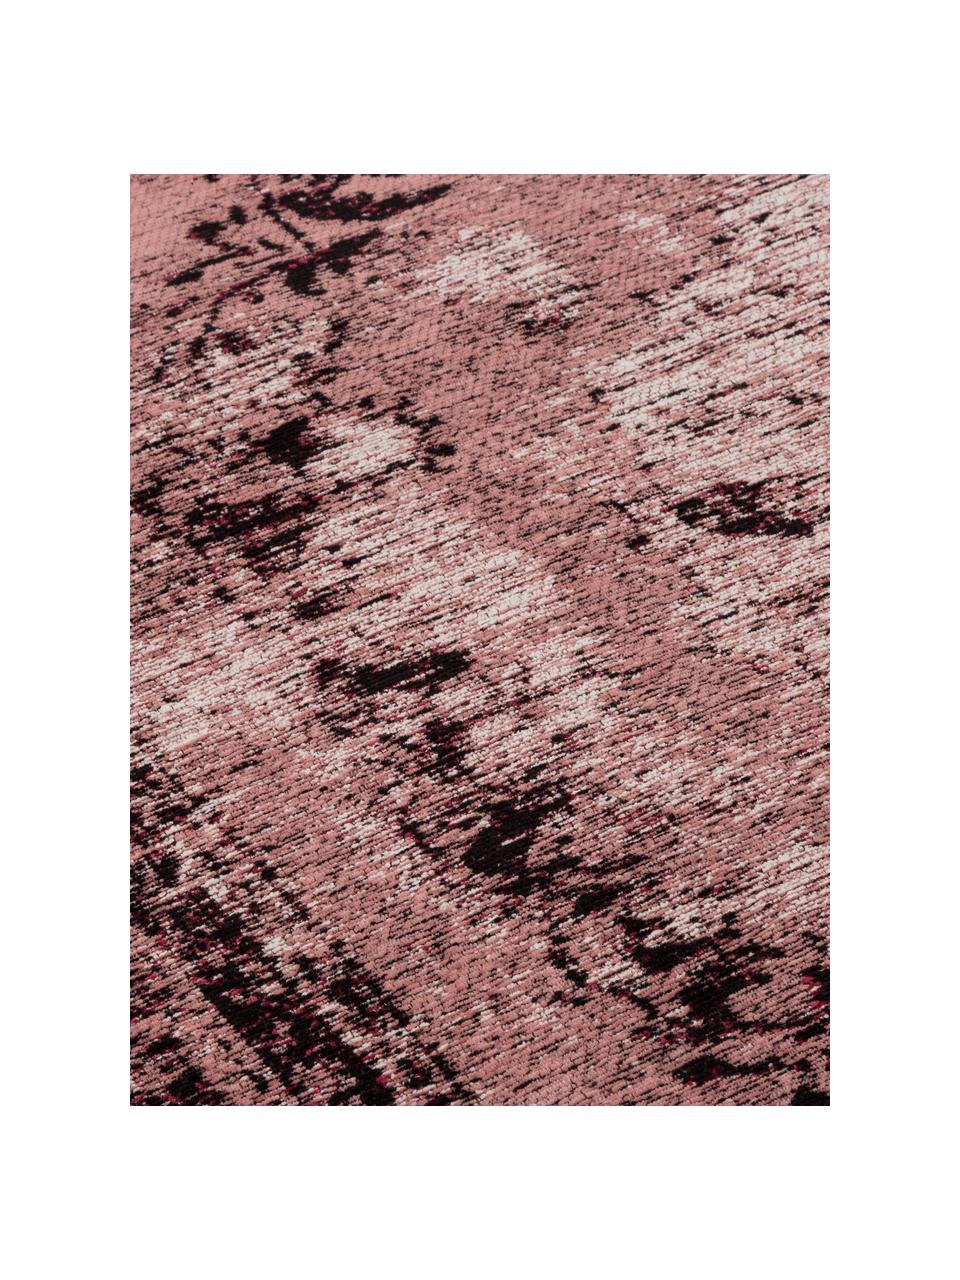 Ručne tkaný ženilkový koberec vo vintage štýle Milan, bledoružová, Bordová, čierna, krémová